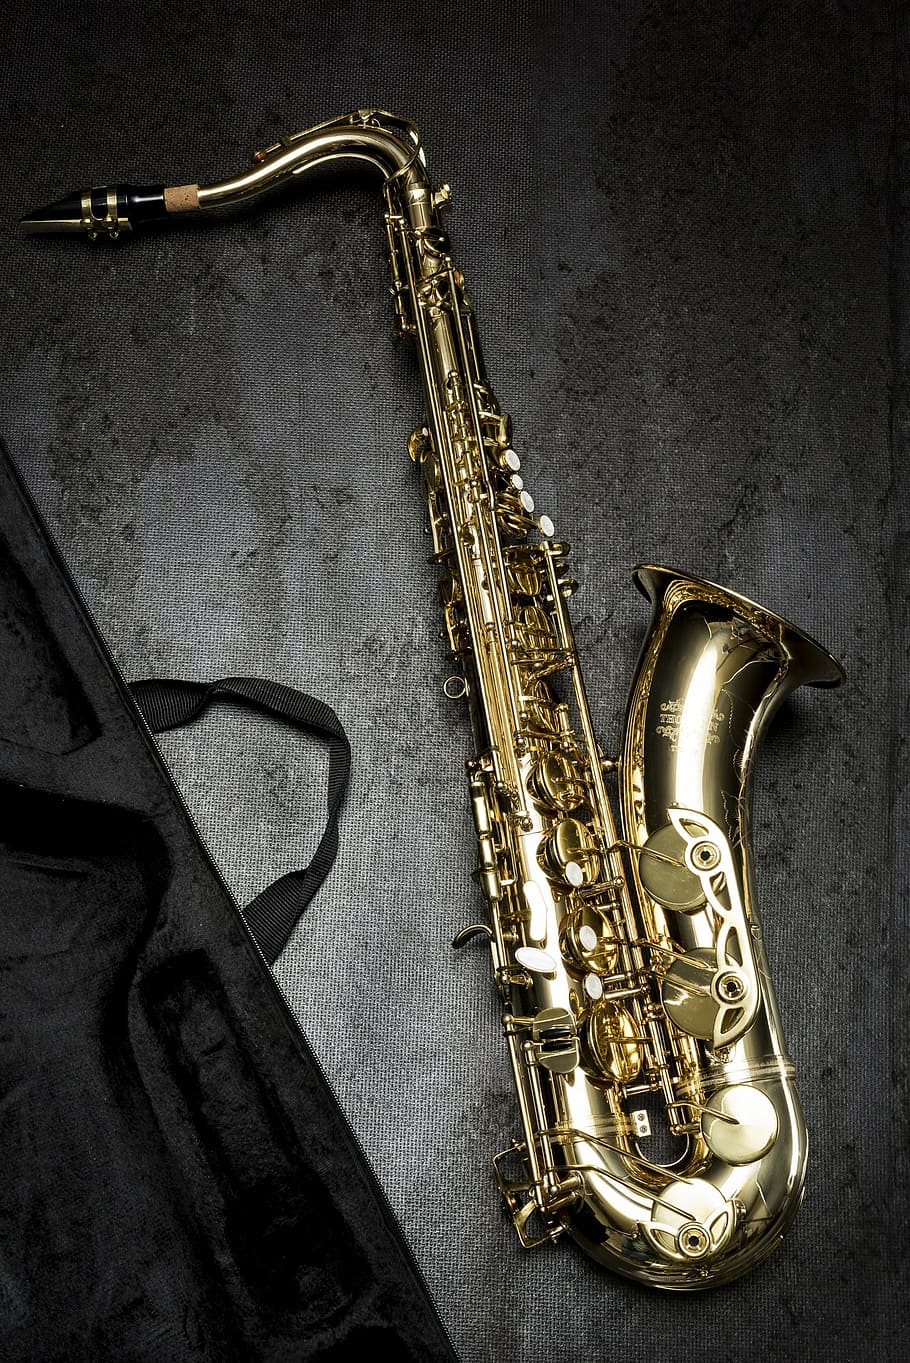 saxofón de oro, saxofón, música, naturaleza muerta, instrumento musical, arte, cultura y entretenimiento, metal, interiores, instrumento de viento